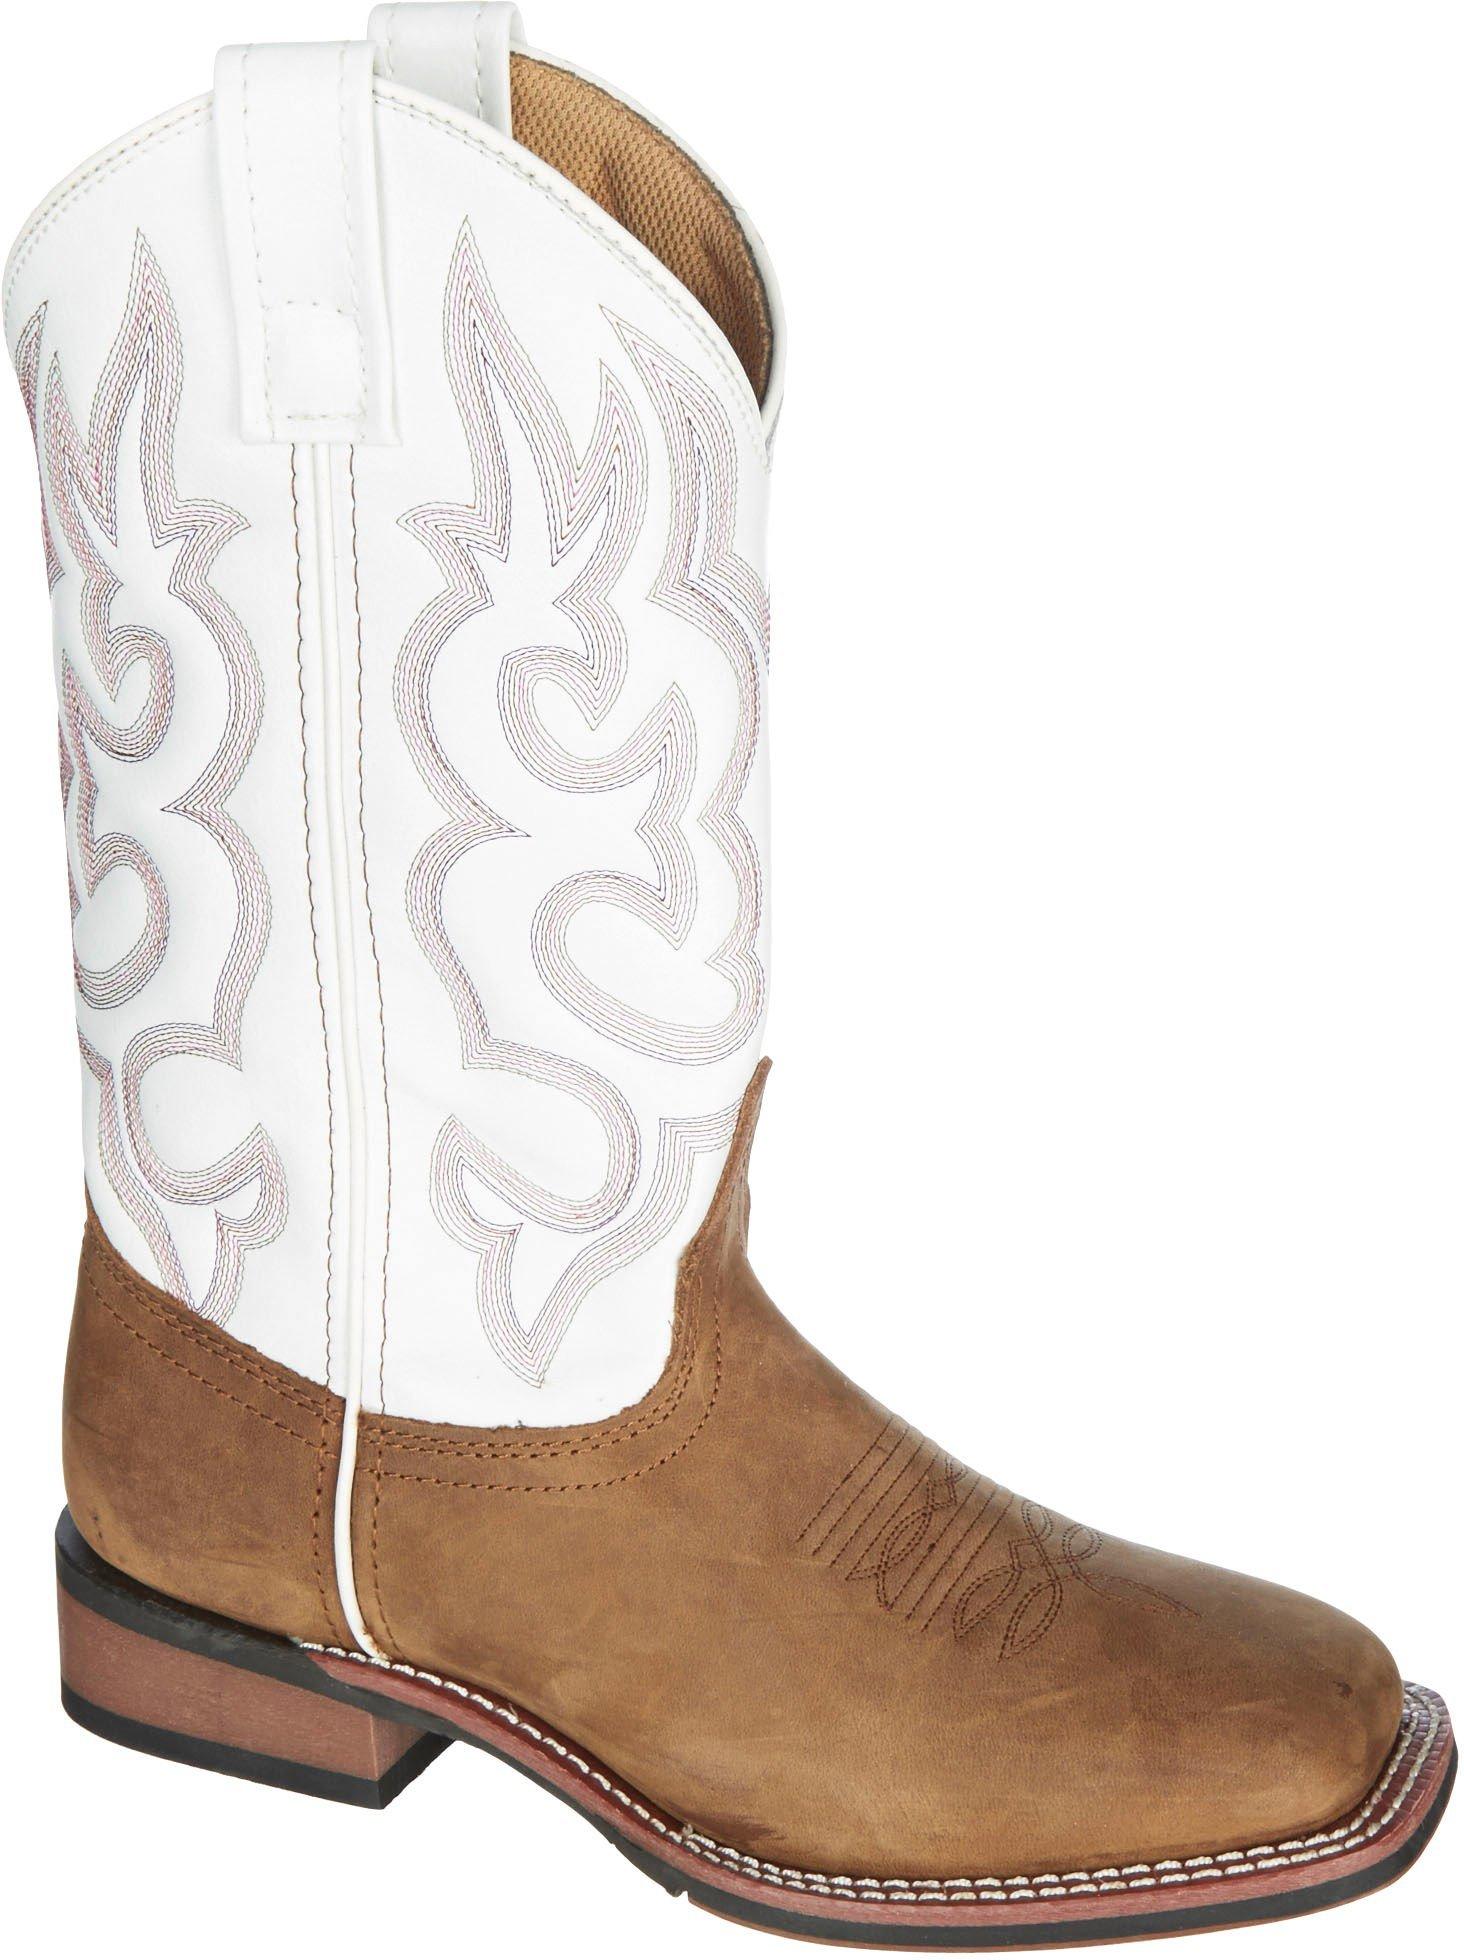 bealls cowboy boots